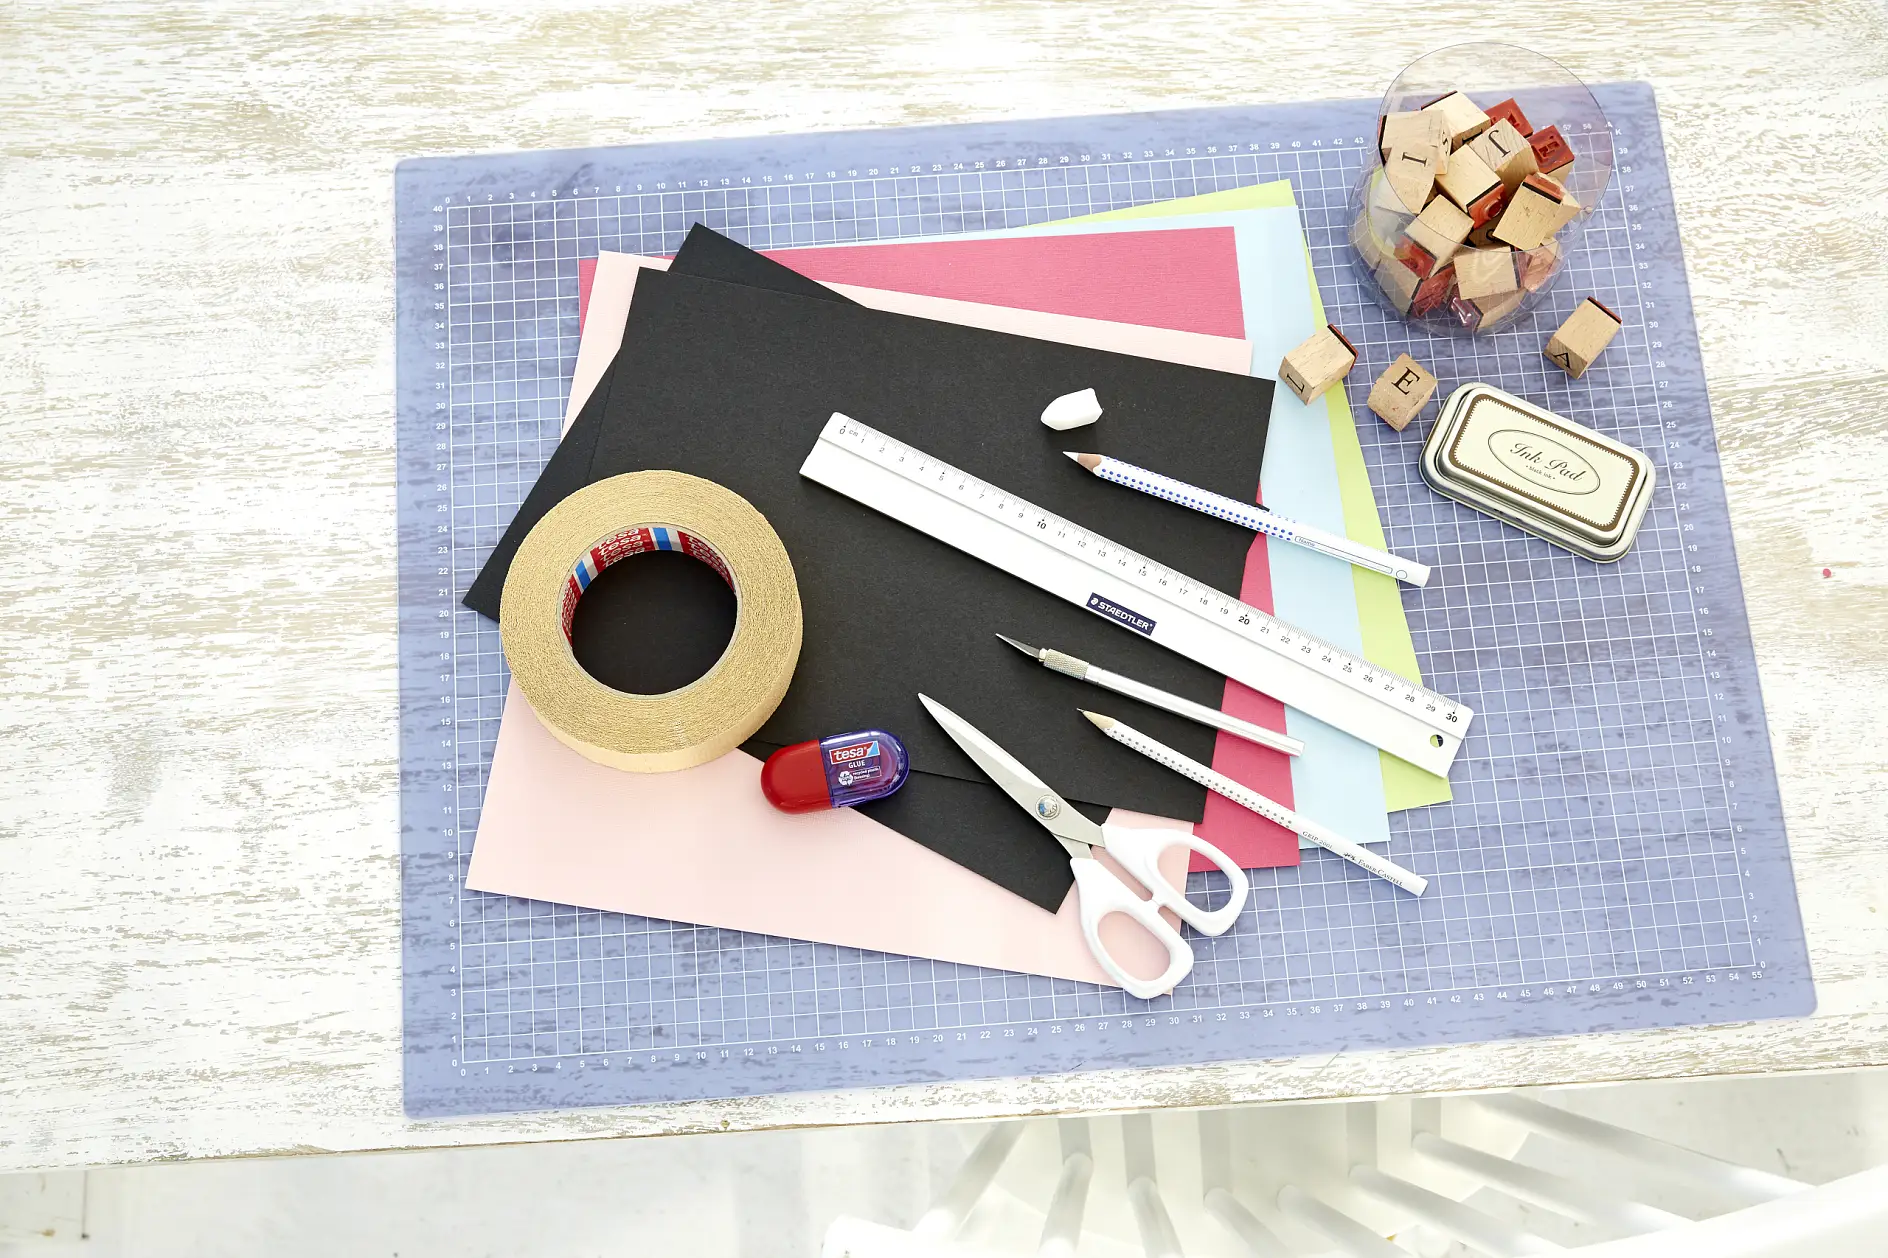 karton A4 w czarnym kolorze, kolorowe kartony, ołówek, linijka, nożyczki, ostry nożyk do wycinania, biała kredka, pieczątka z literkami, poduszka nasączona tuszem, kreda